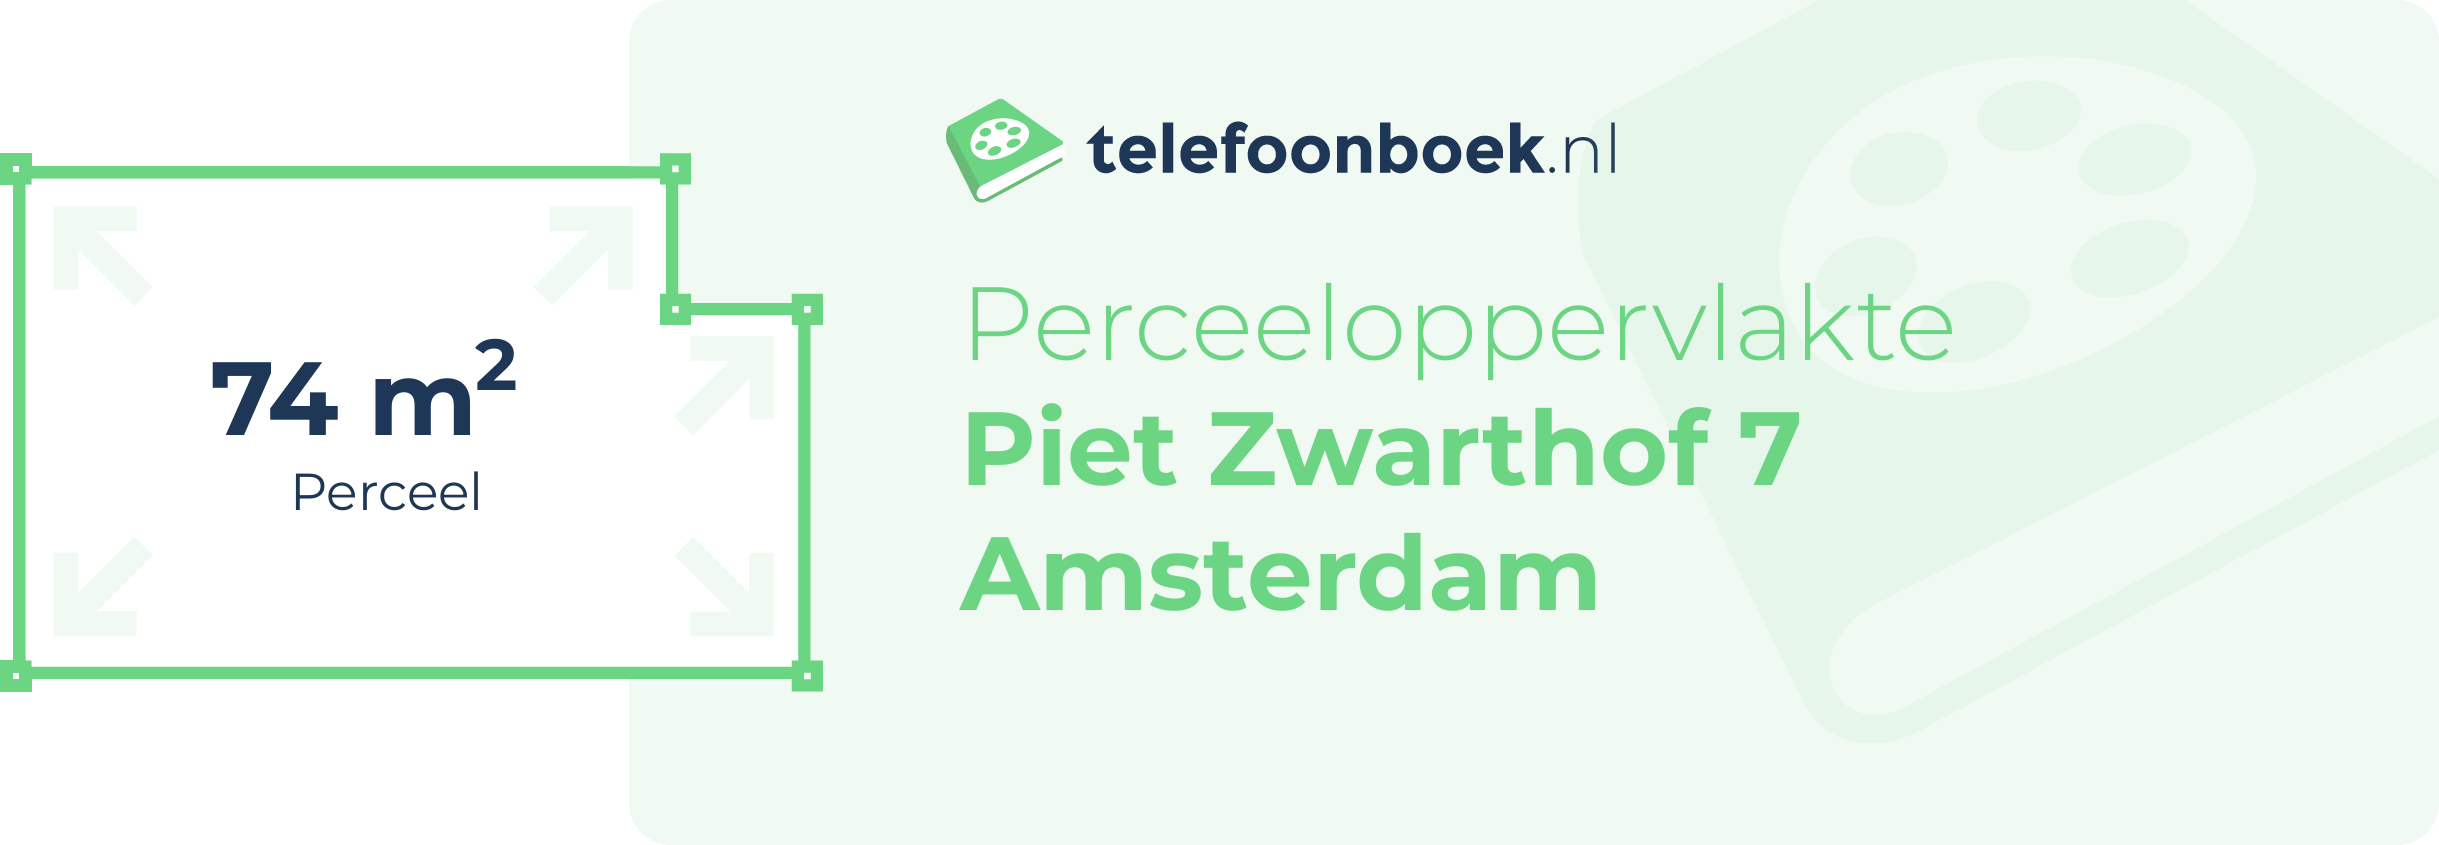 Perceeloppervlakte Piet Zwarthof 7 Amsterdam